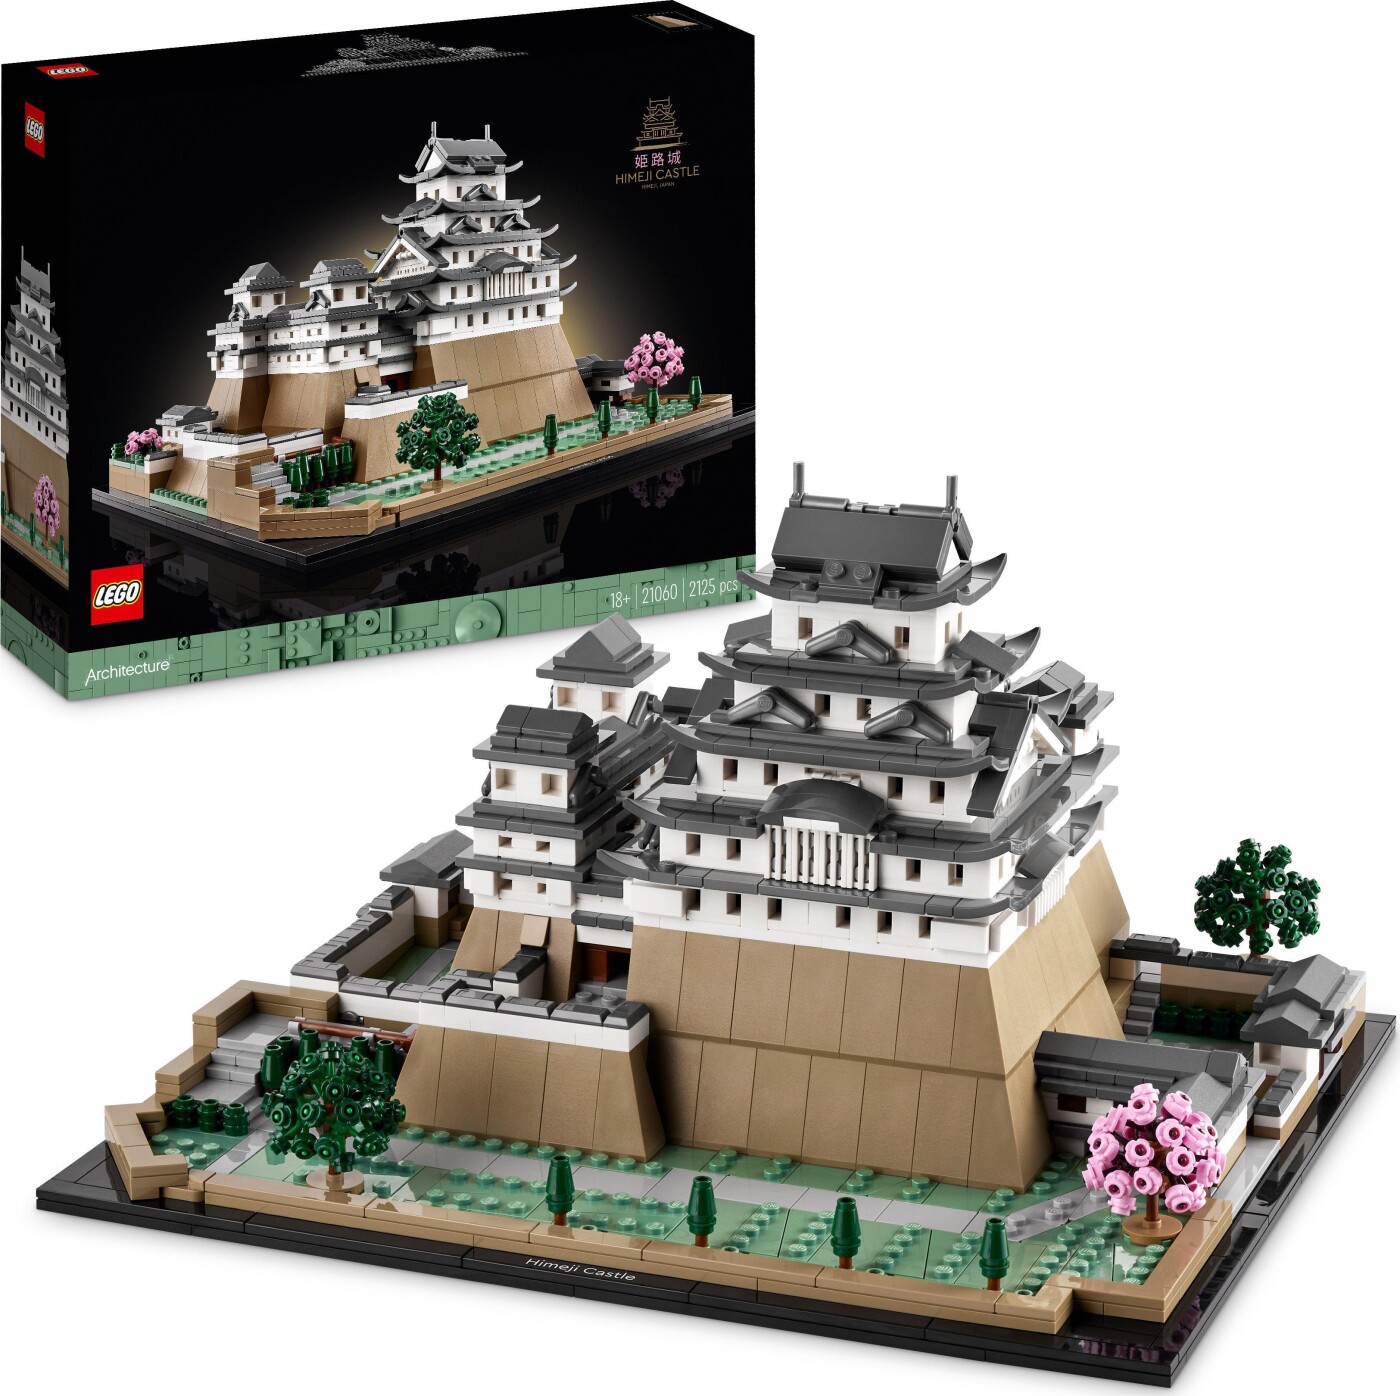 Billede af Lego Architecture - Himeji-borgen - 21060 hos Gucca.dk